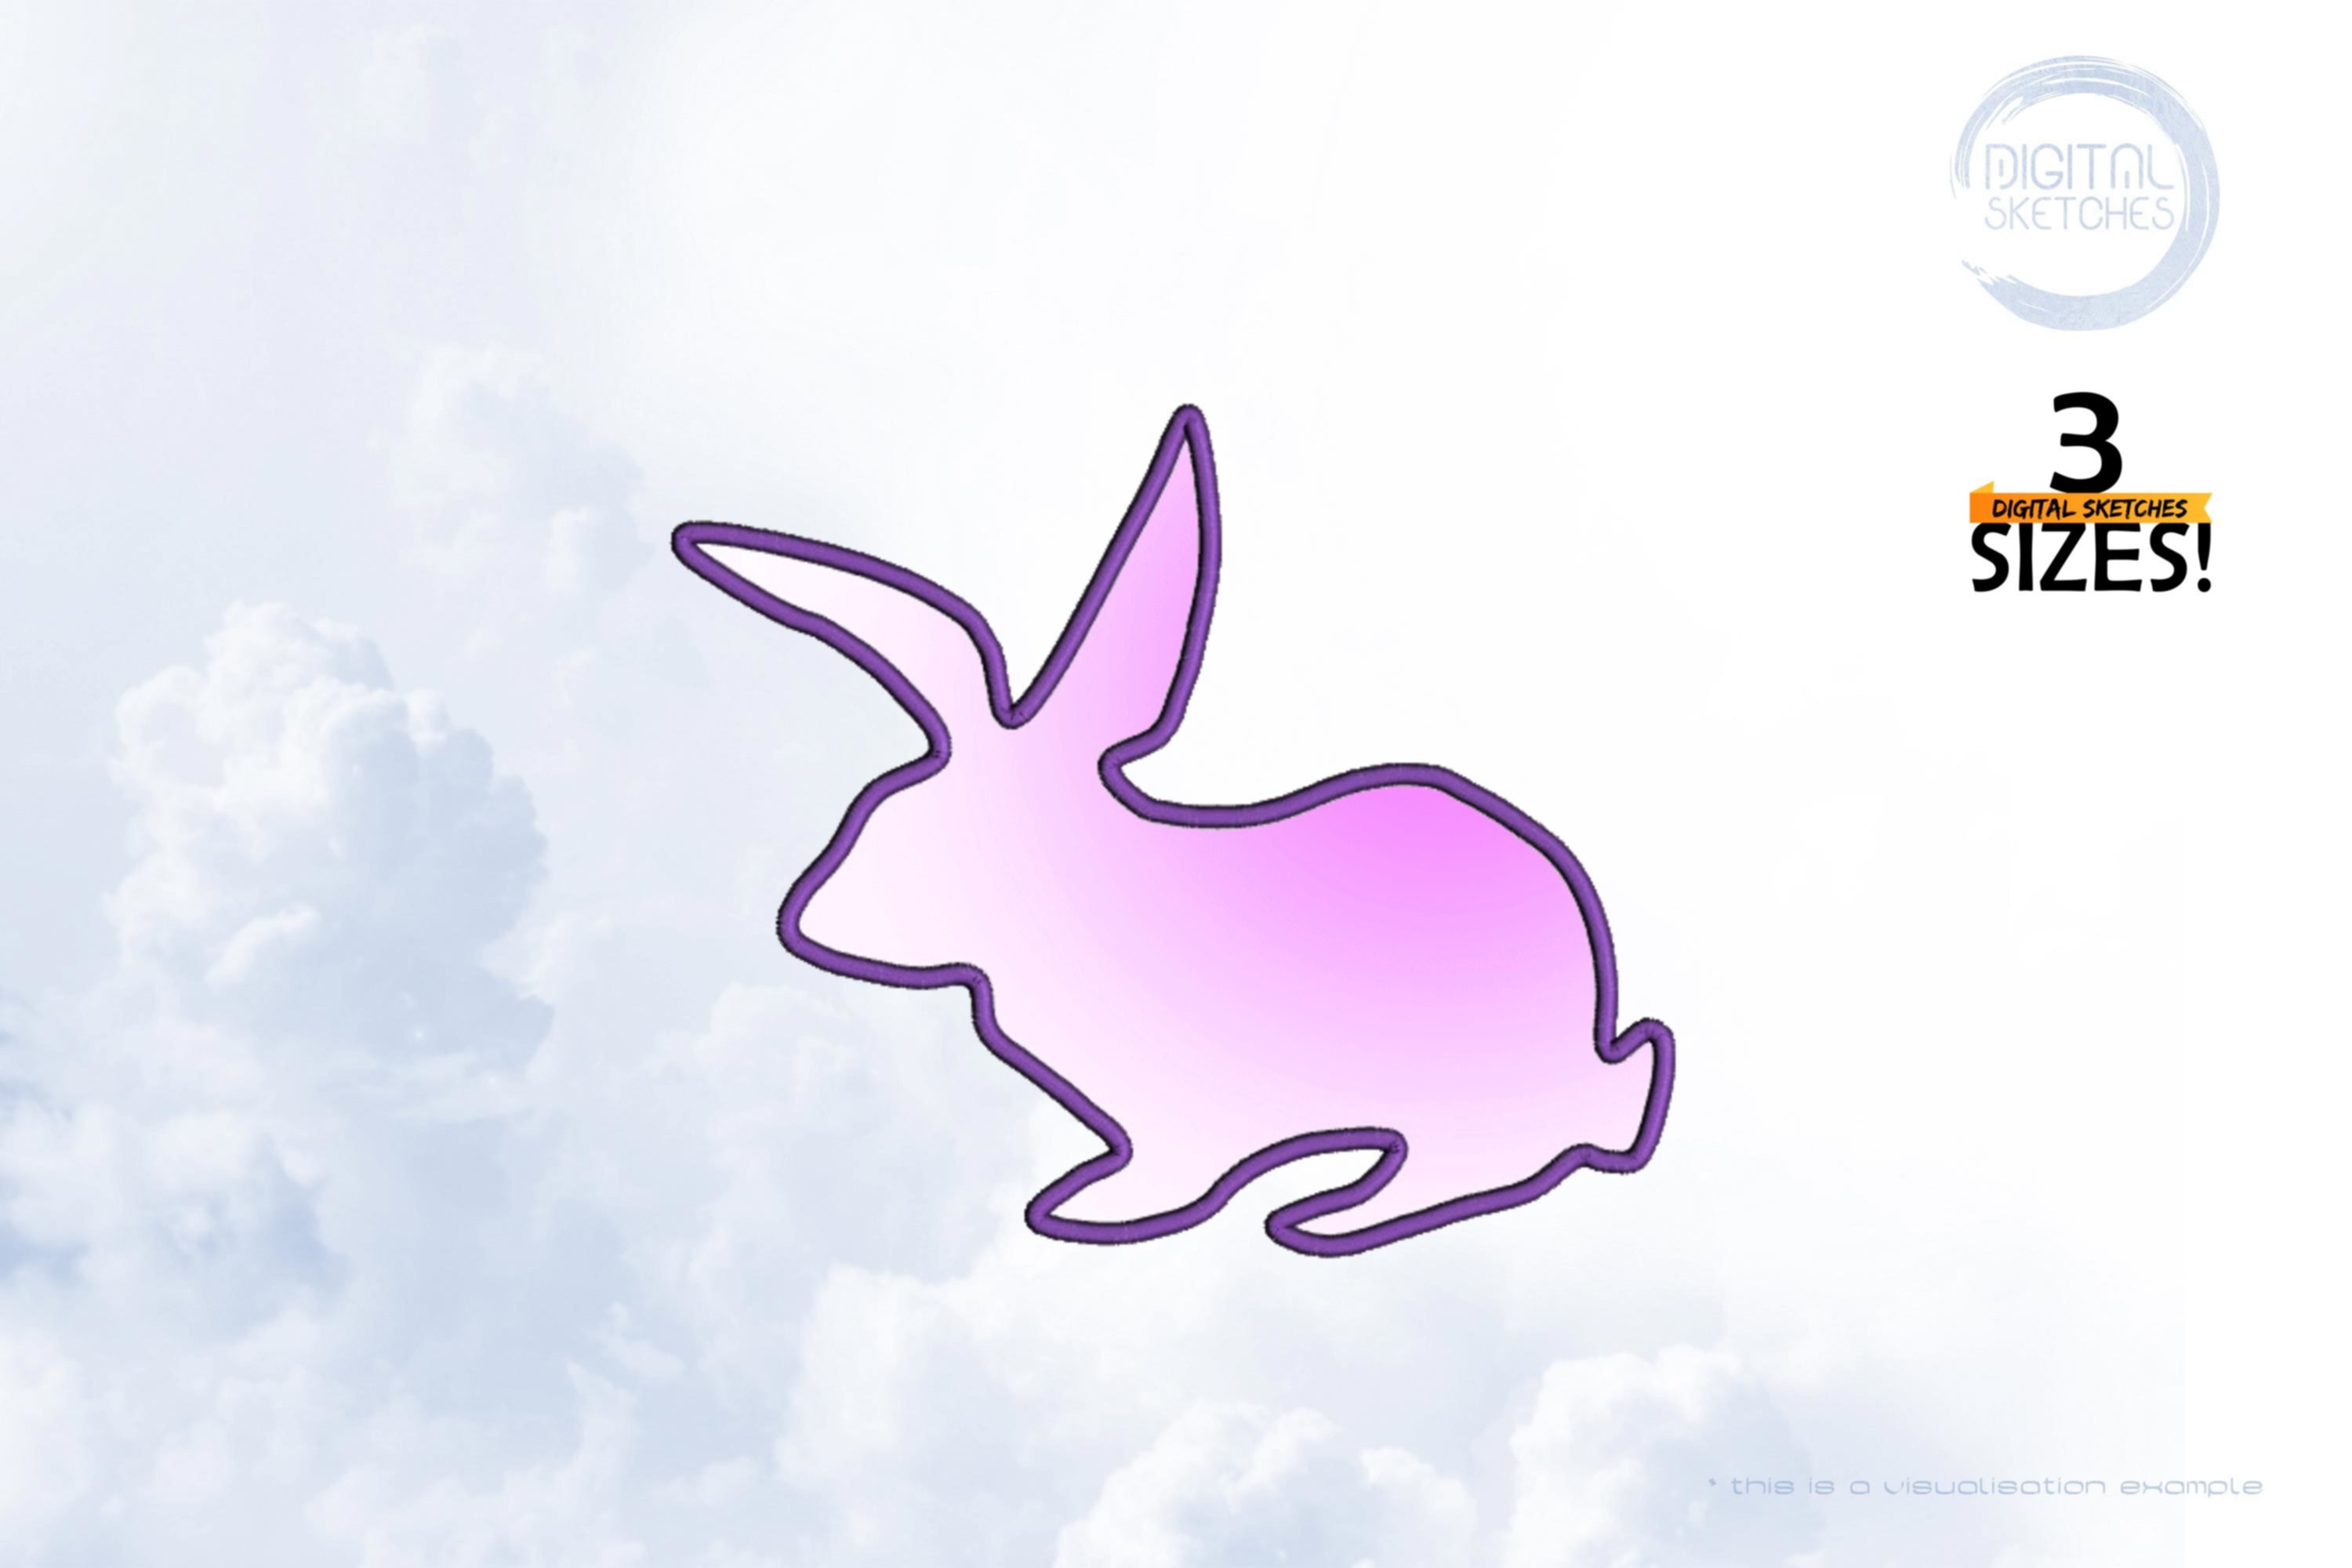 Baby Bunny Applique Design